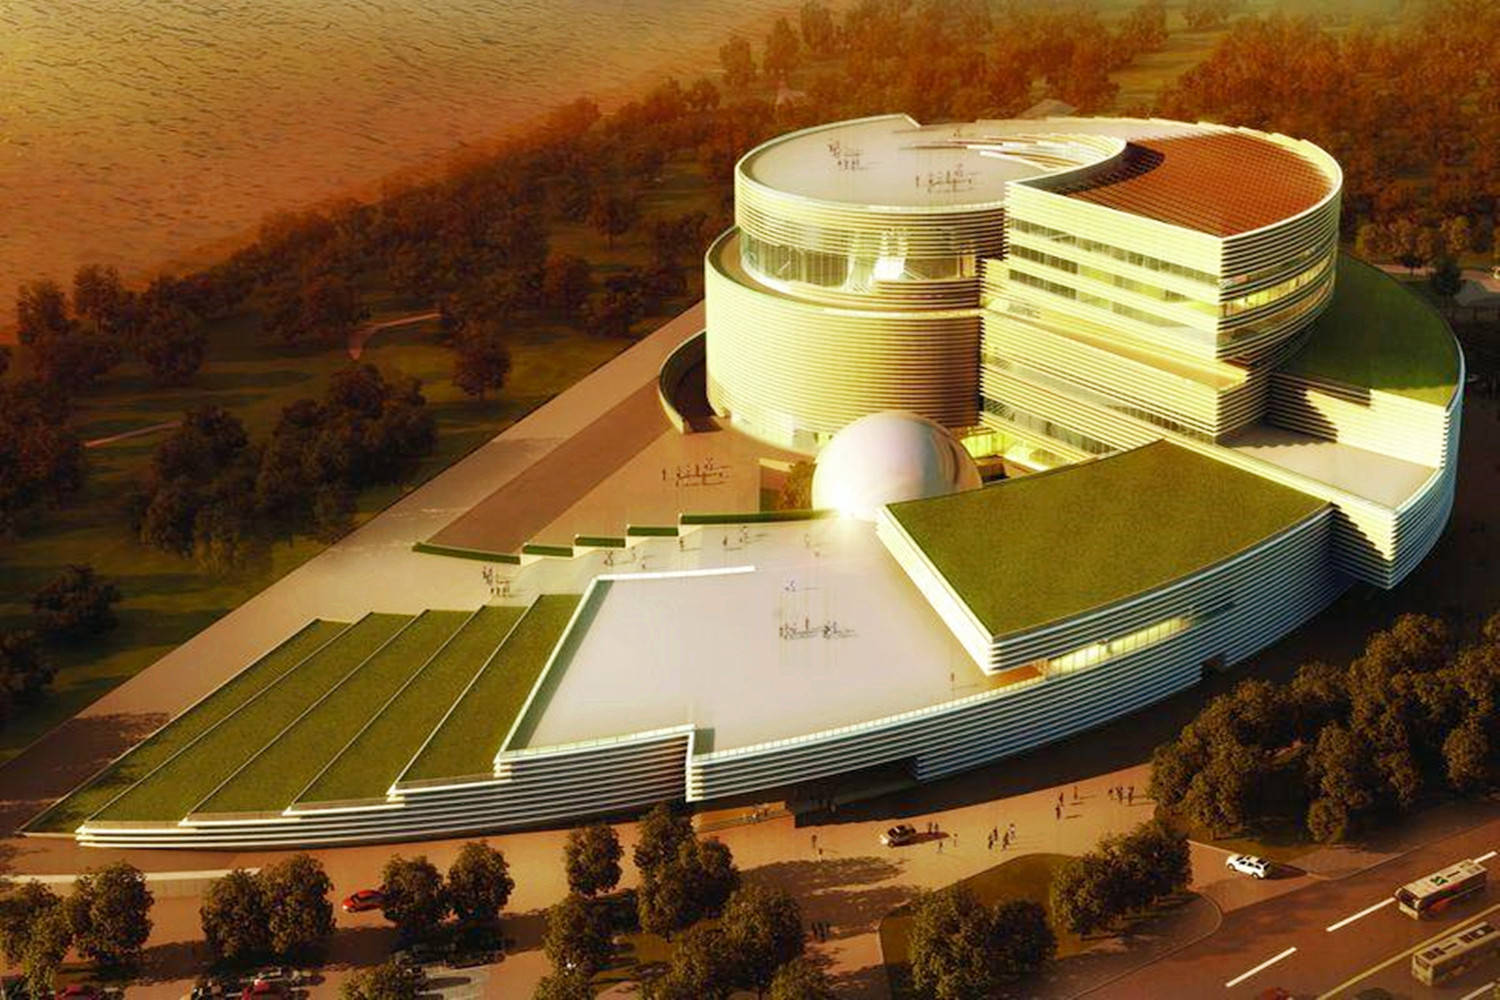 原创福州科技馆新馆在建中,占地约1.82万平方米,规划设7个主题展